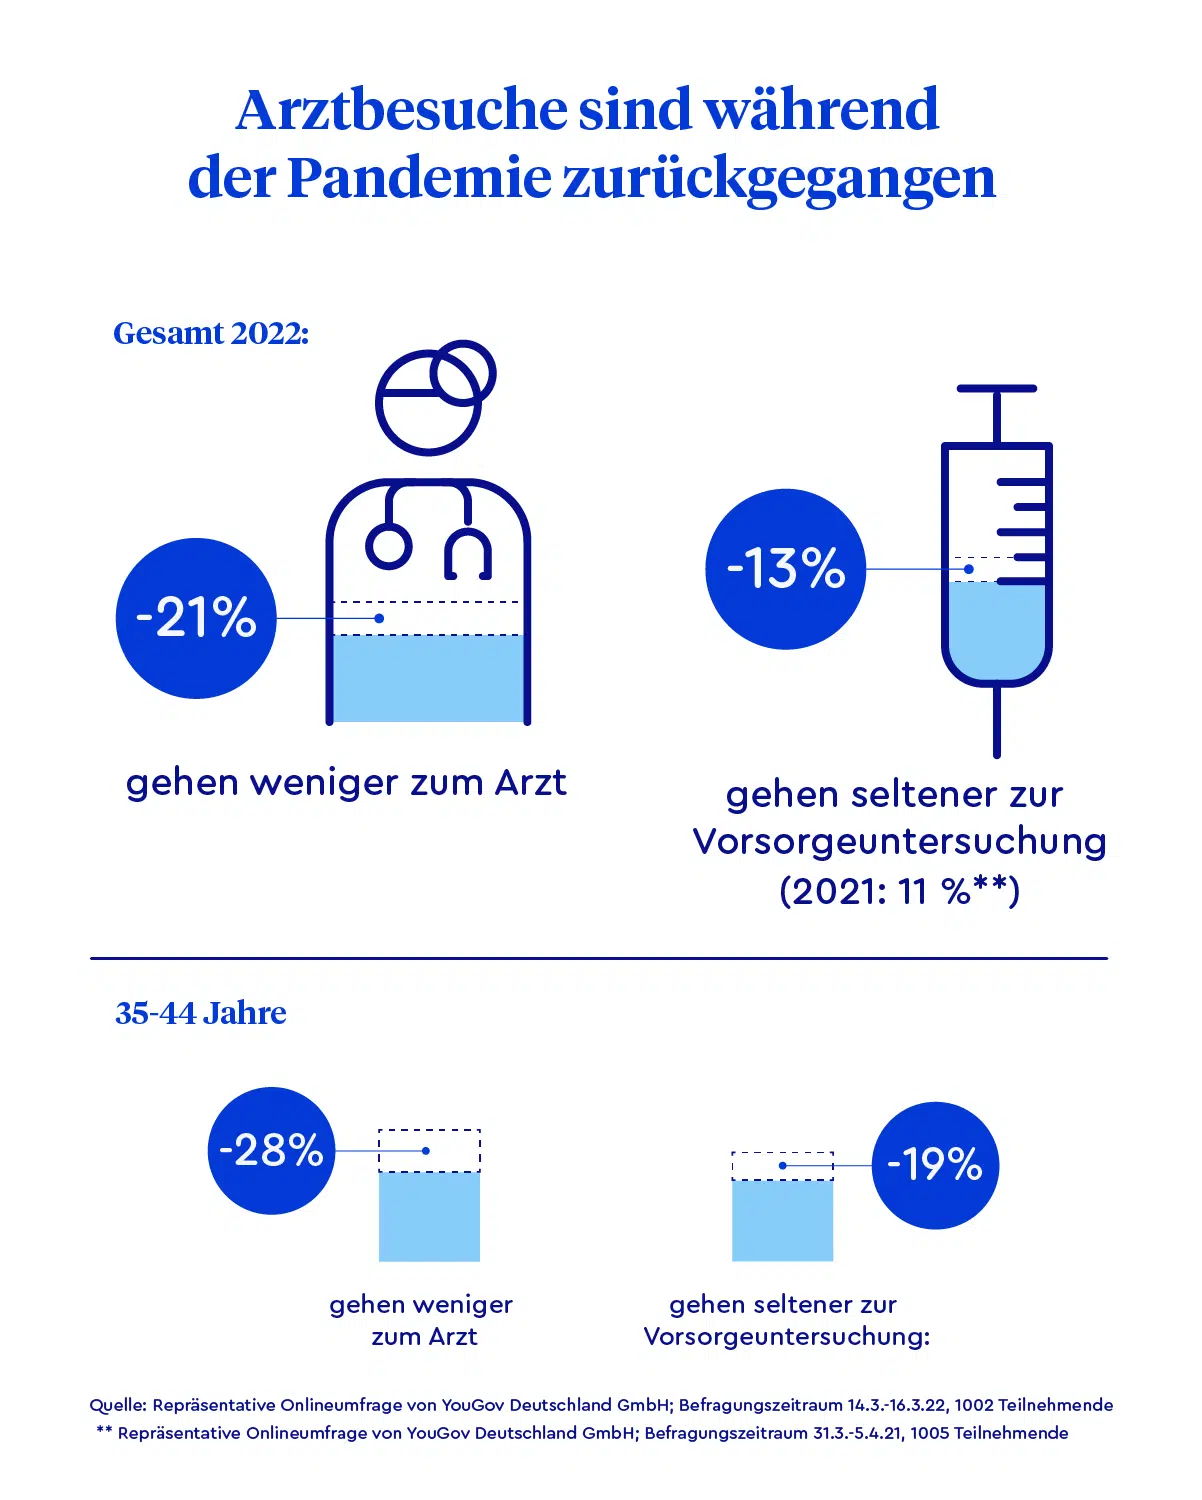 Infografik, die zeigt, dass die Menschen in Deutschland 2021 seltener zum Arzt gegangen sind.